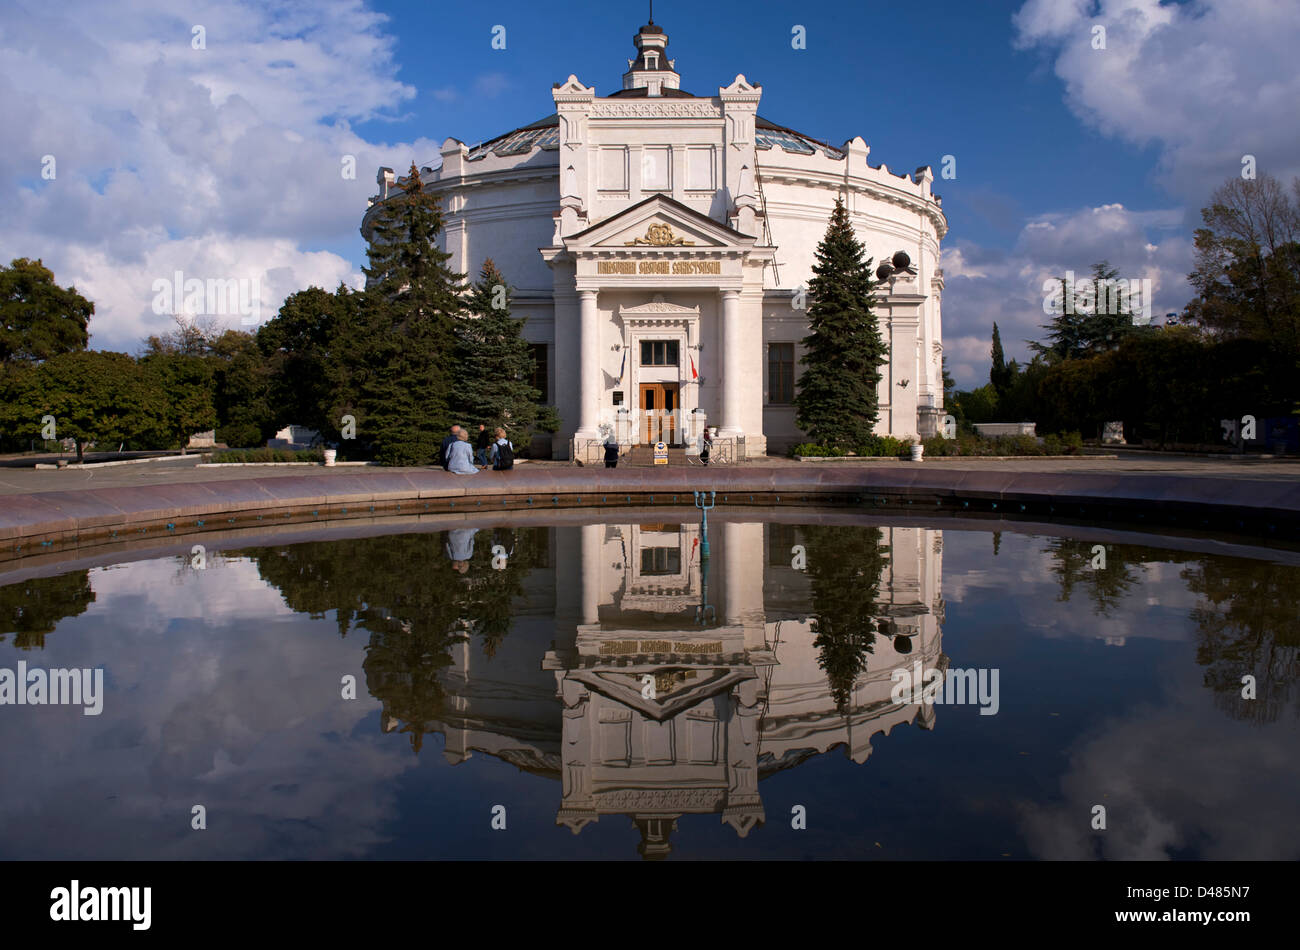 The Panorama building in Sevastopol, Crimea Stock Photo